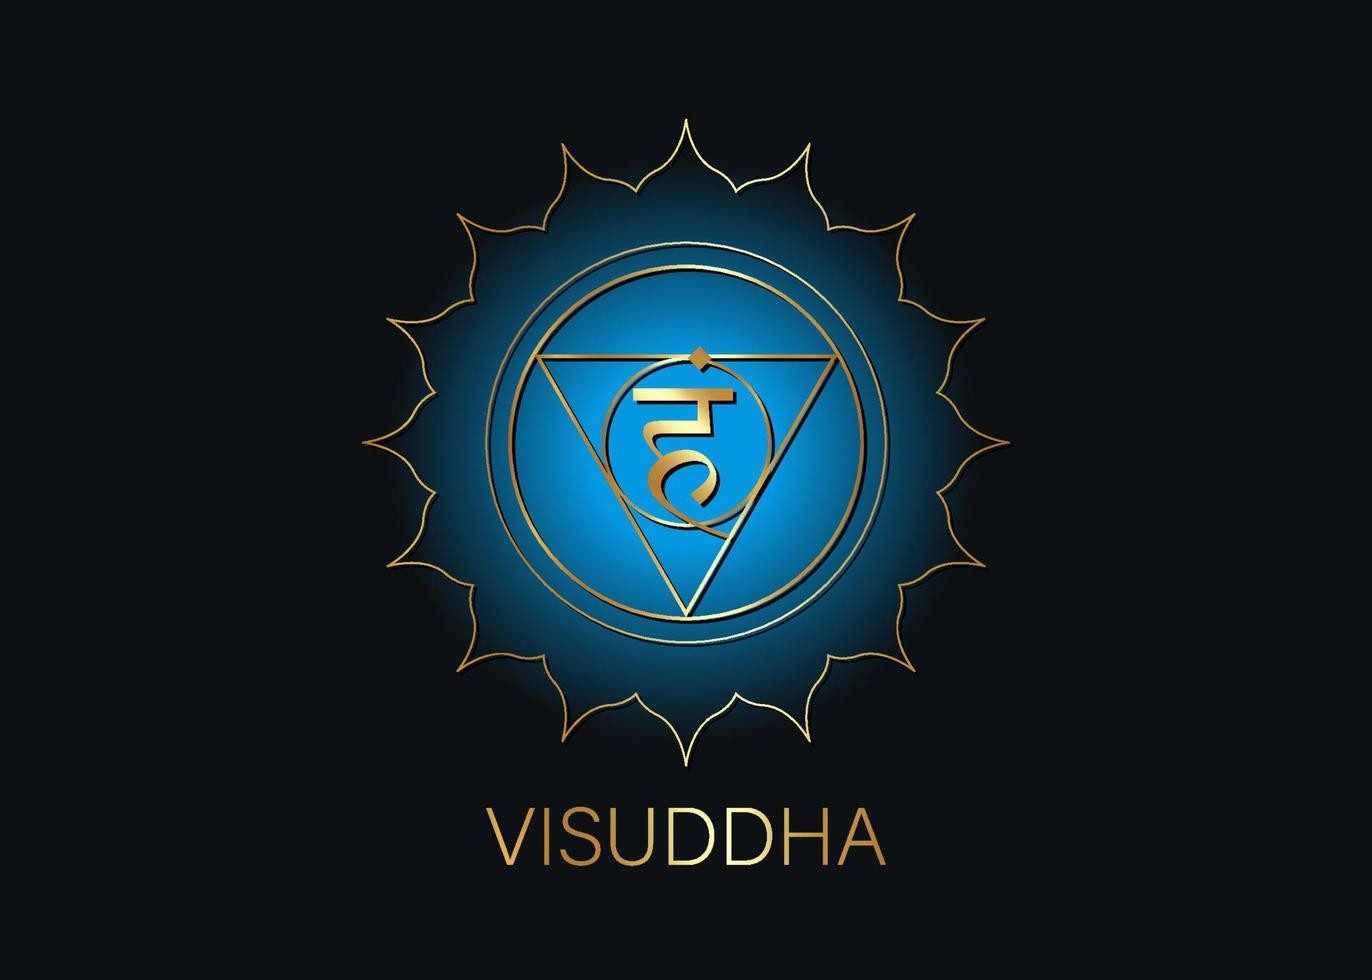 fünftes Kehl-Chakra Visuddha mit dem hinduistischen Sanskrit-Samen-Mantra Vam. blaues und goldenes flaches Designsymbol für Meditation, Yoga. runder Logo-Vorlagenvektor auf schwarzem Hintergrund isoliert vektor